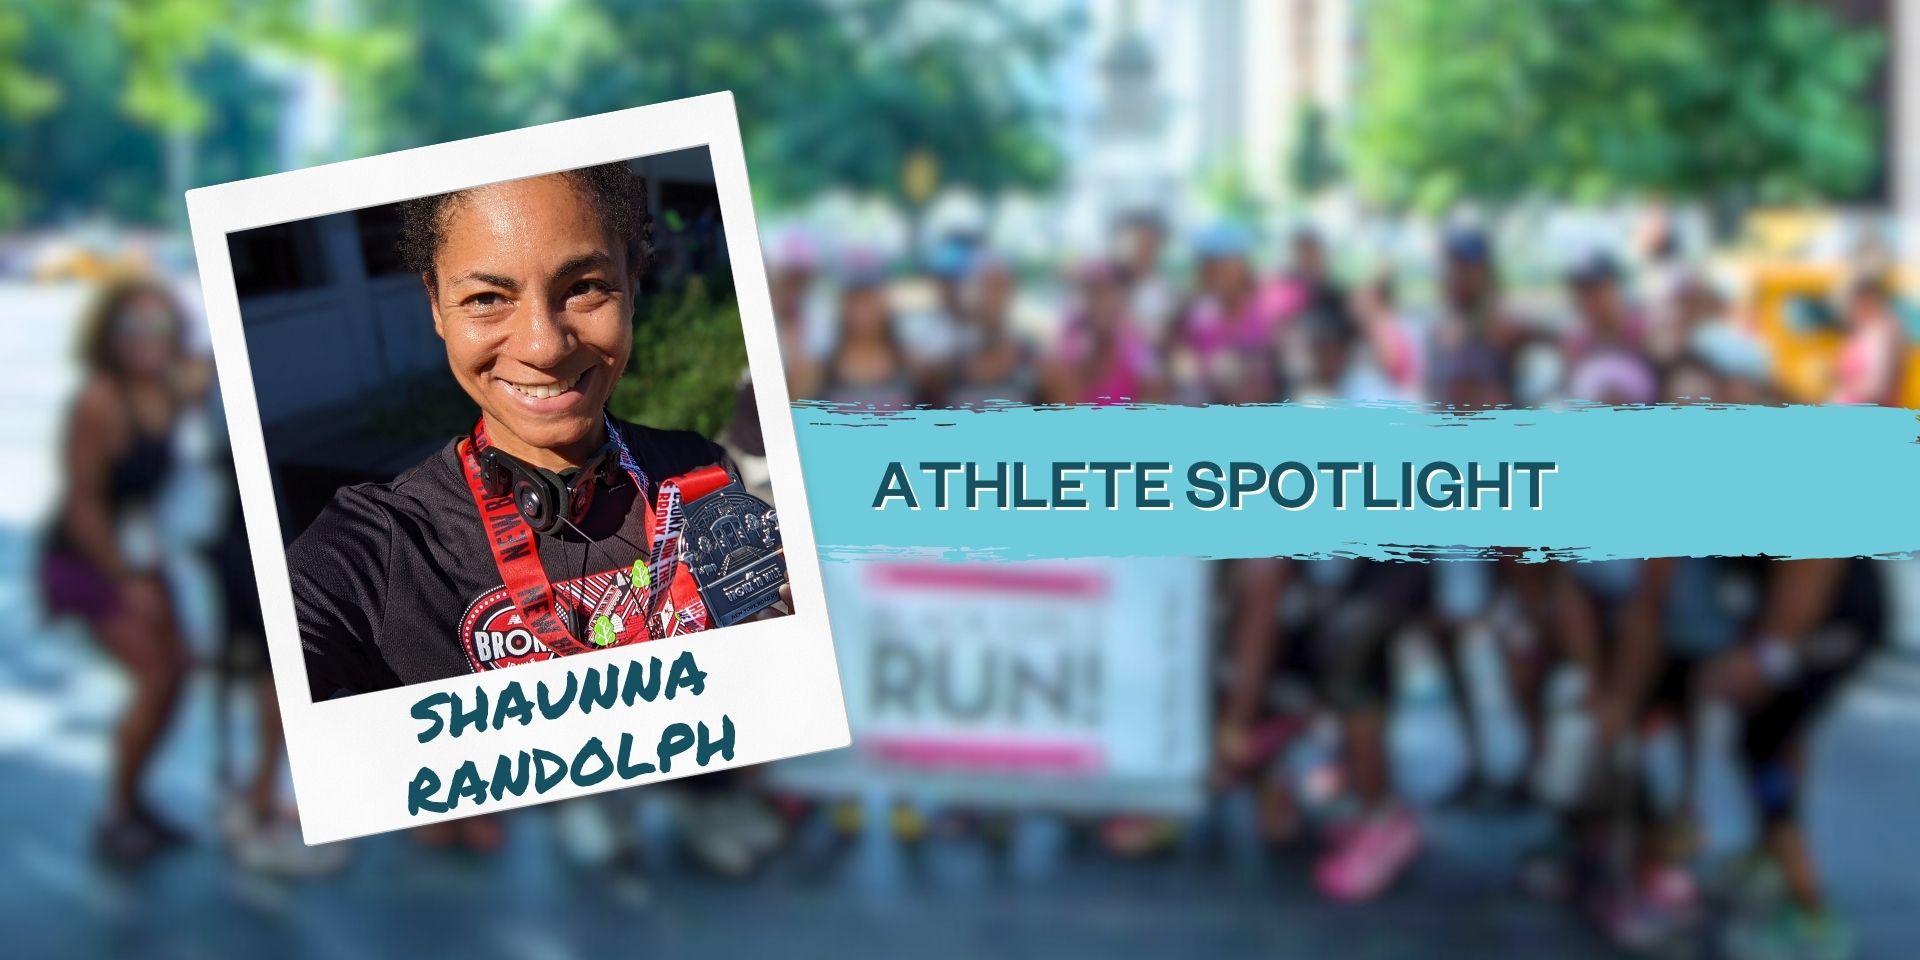 Athlete spotlight banner for Shaunna Randolph